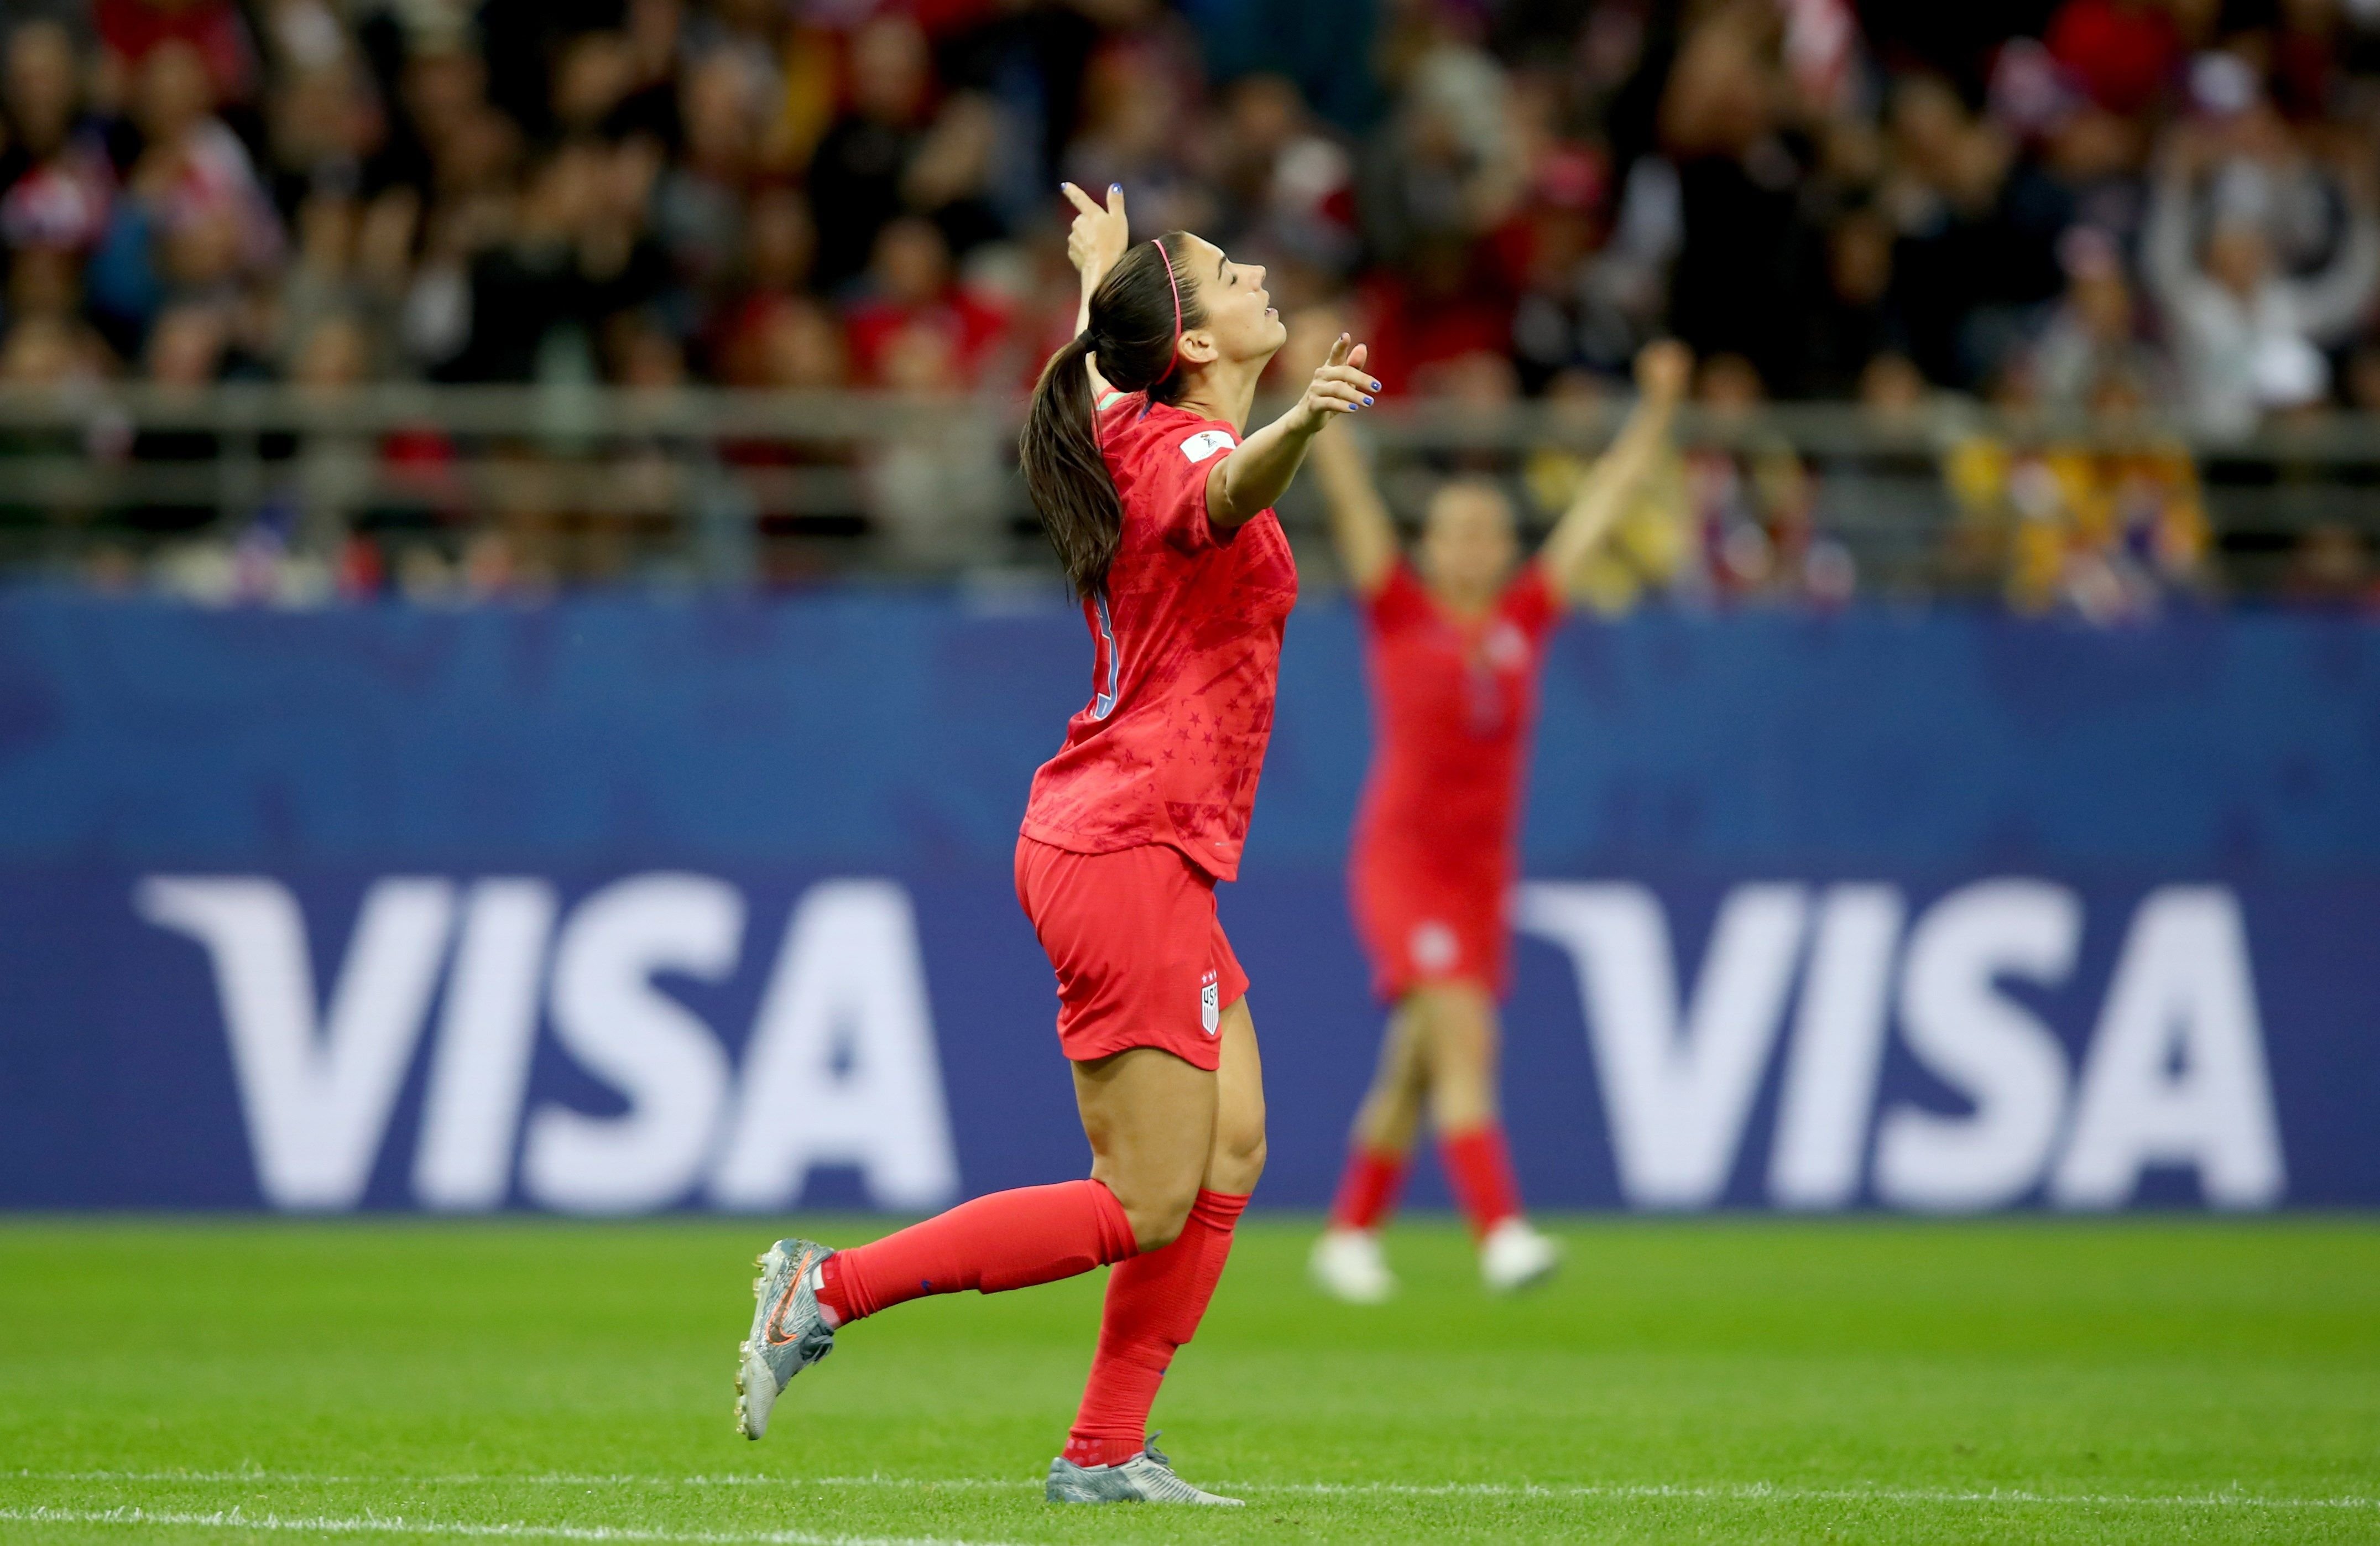 La escandalosa brecha salarial entre el fútbol masculino y femenino mundial